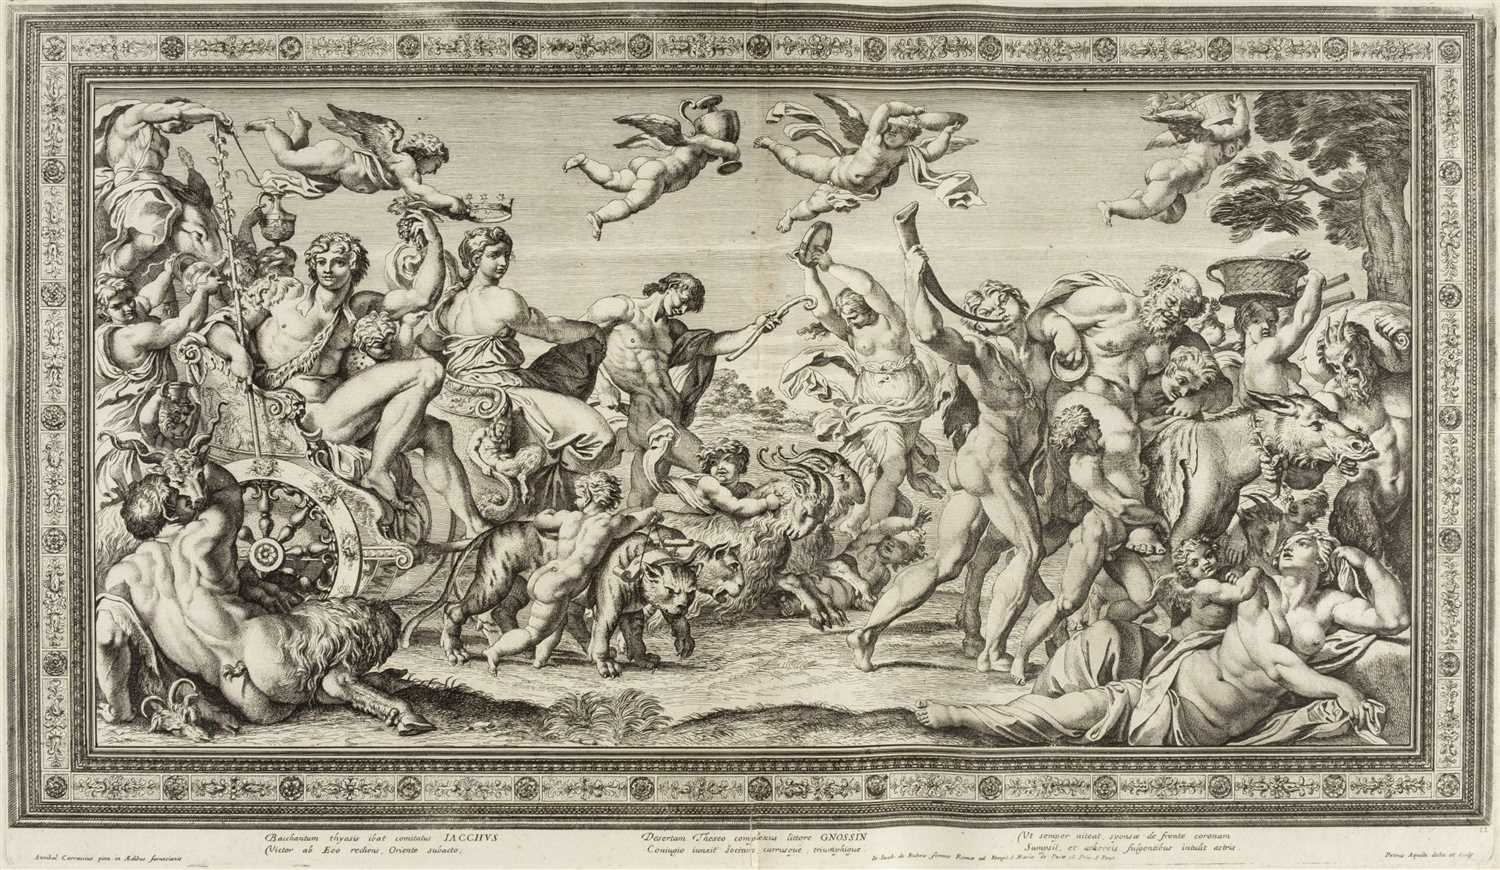 Lot 356 - Aquila (Pietro). Galeriae Farnesianae [bound with:] Deorum Concilium, Rome, 1674-5